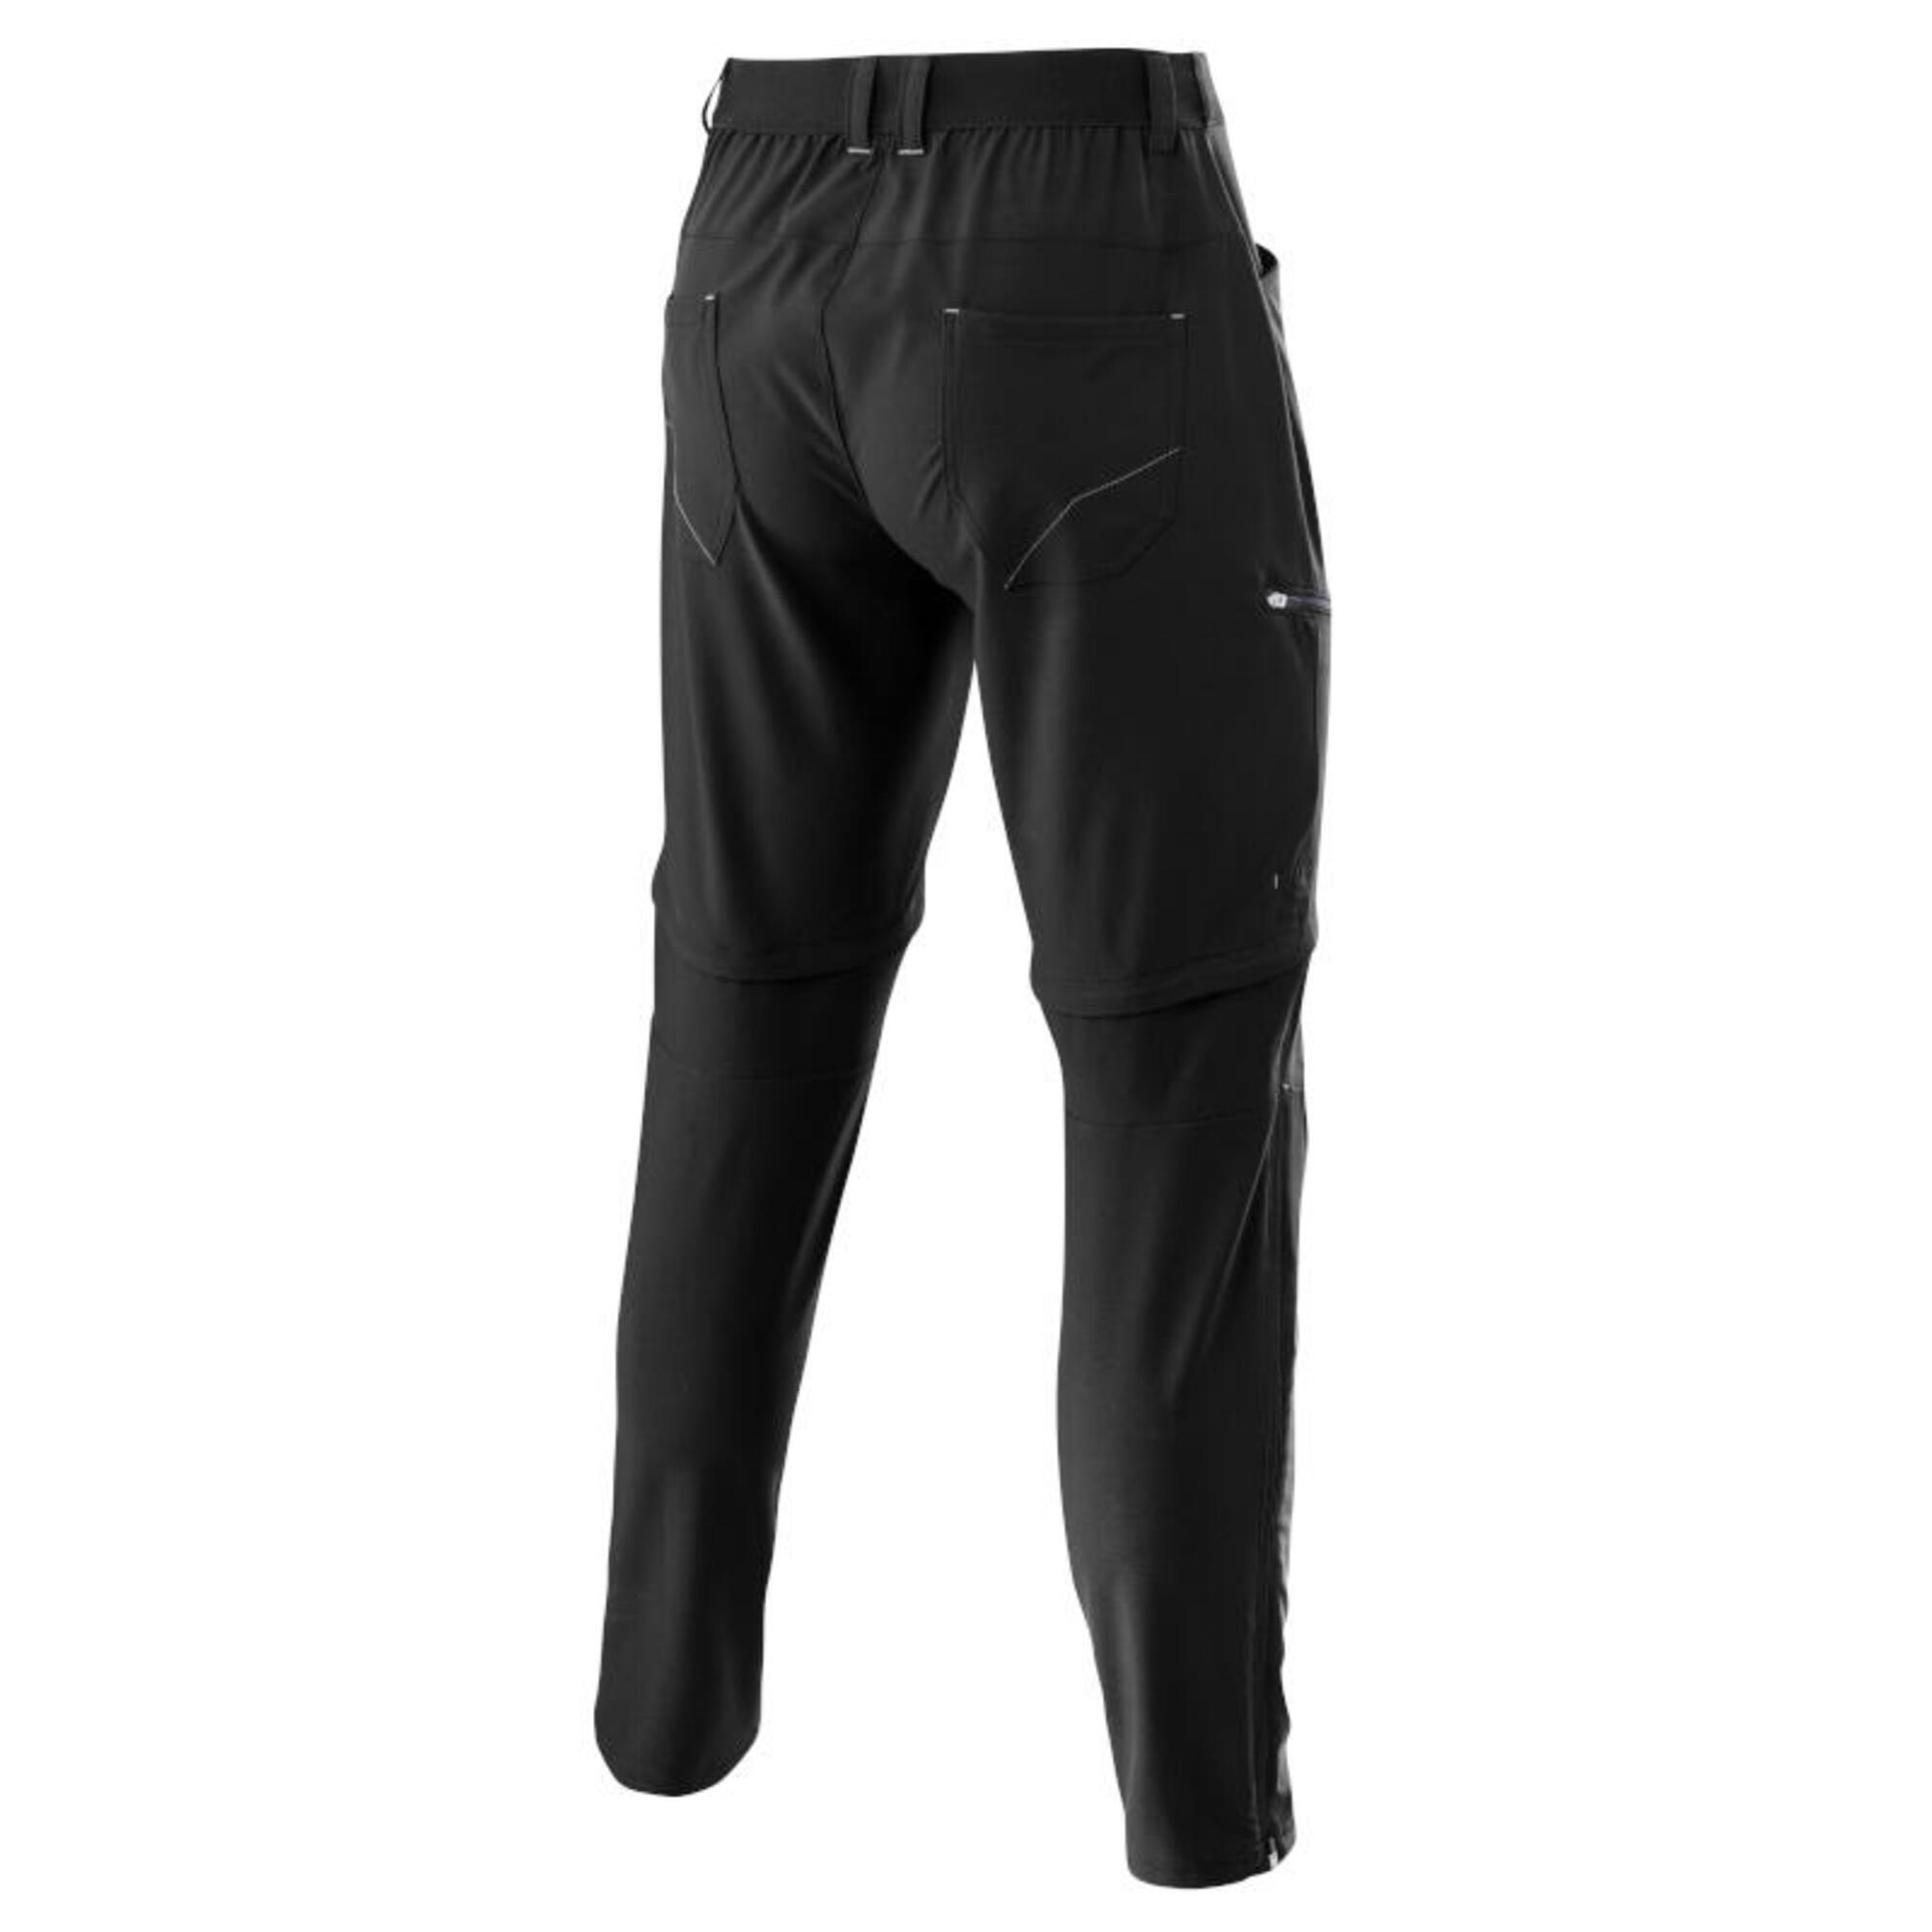 Outdoor pantalon pour hommes M T-Zip Tapered Active Stretch Light - Noir